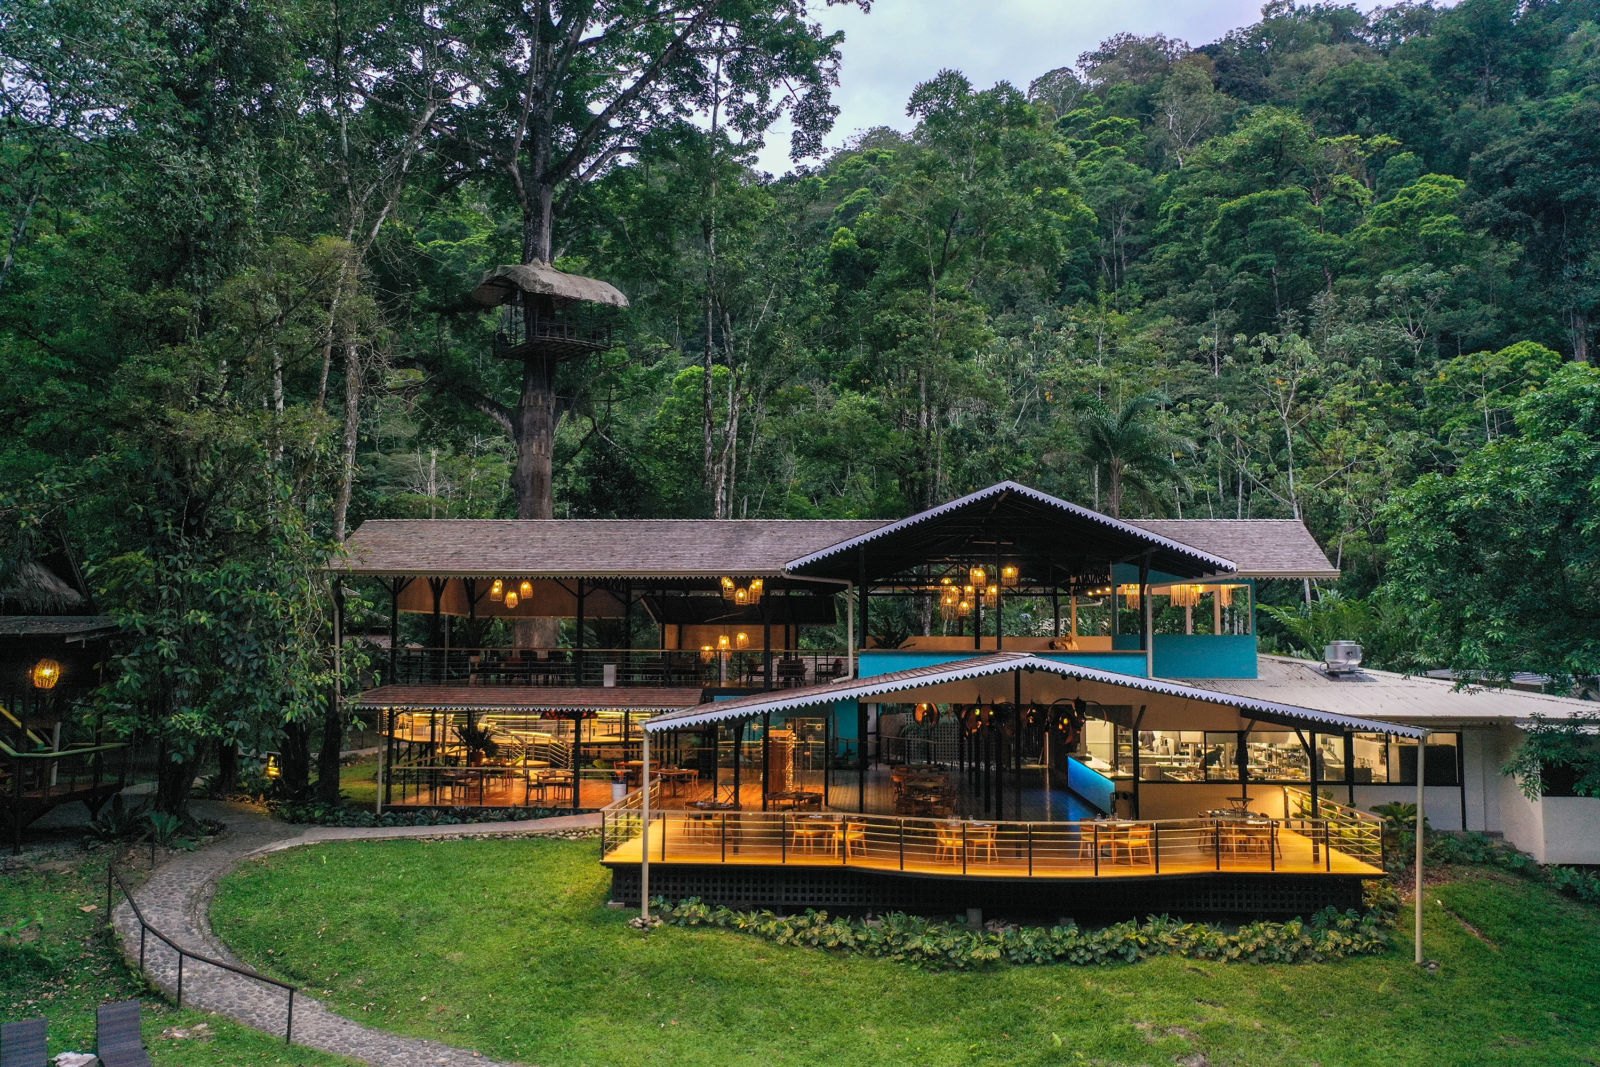 Pacuare Lodge - Costa Rica